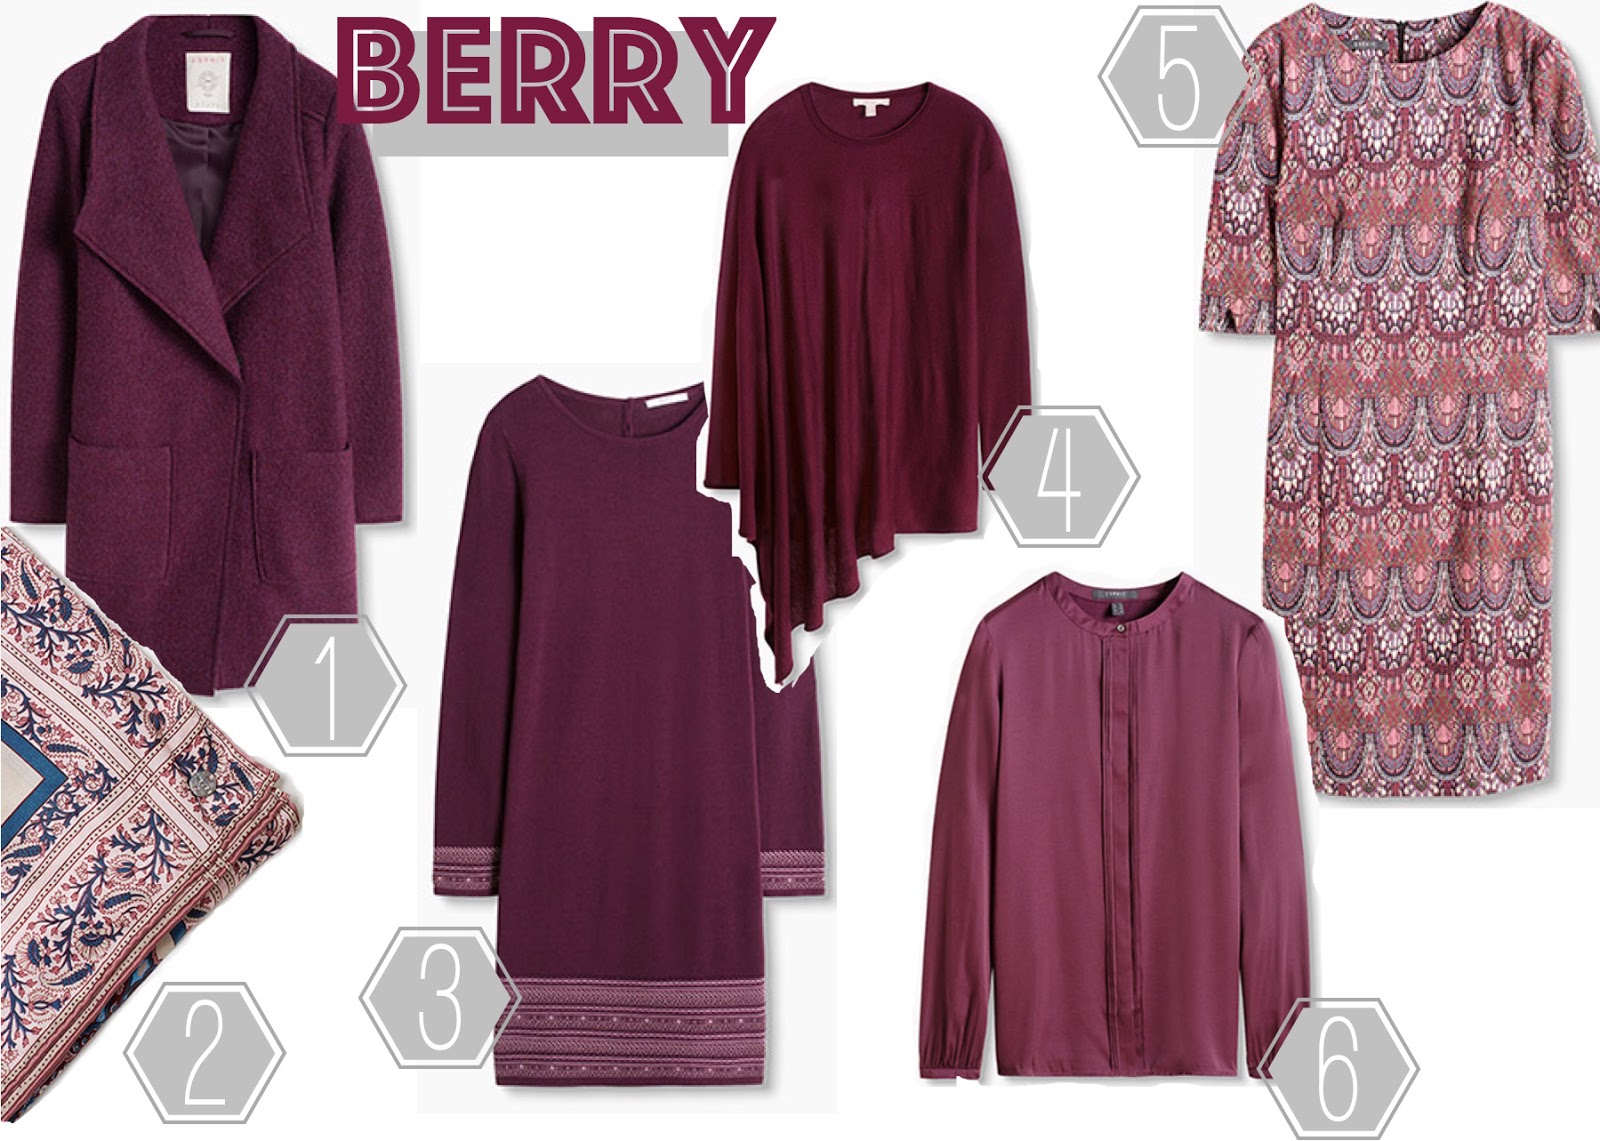 Berry Beerenfarbe Herbst Trendfarbe 2016 Herbsttrendfarbe Esprit